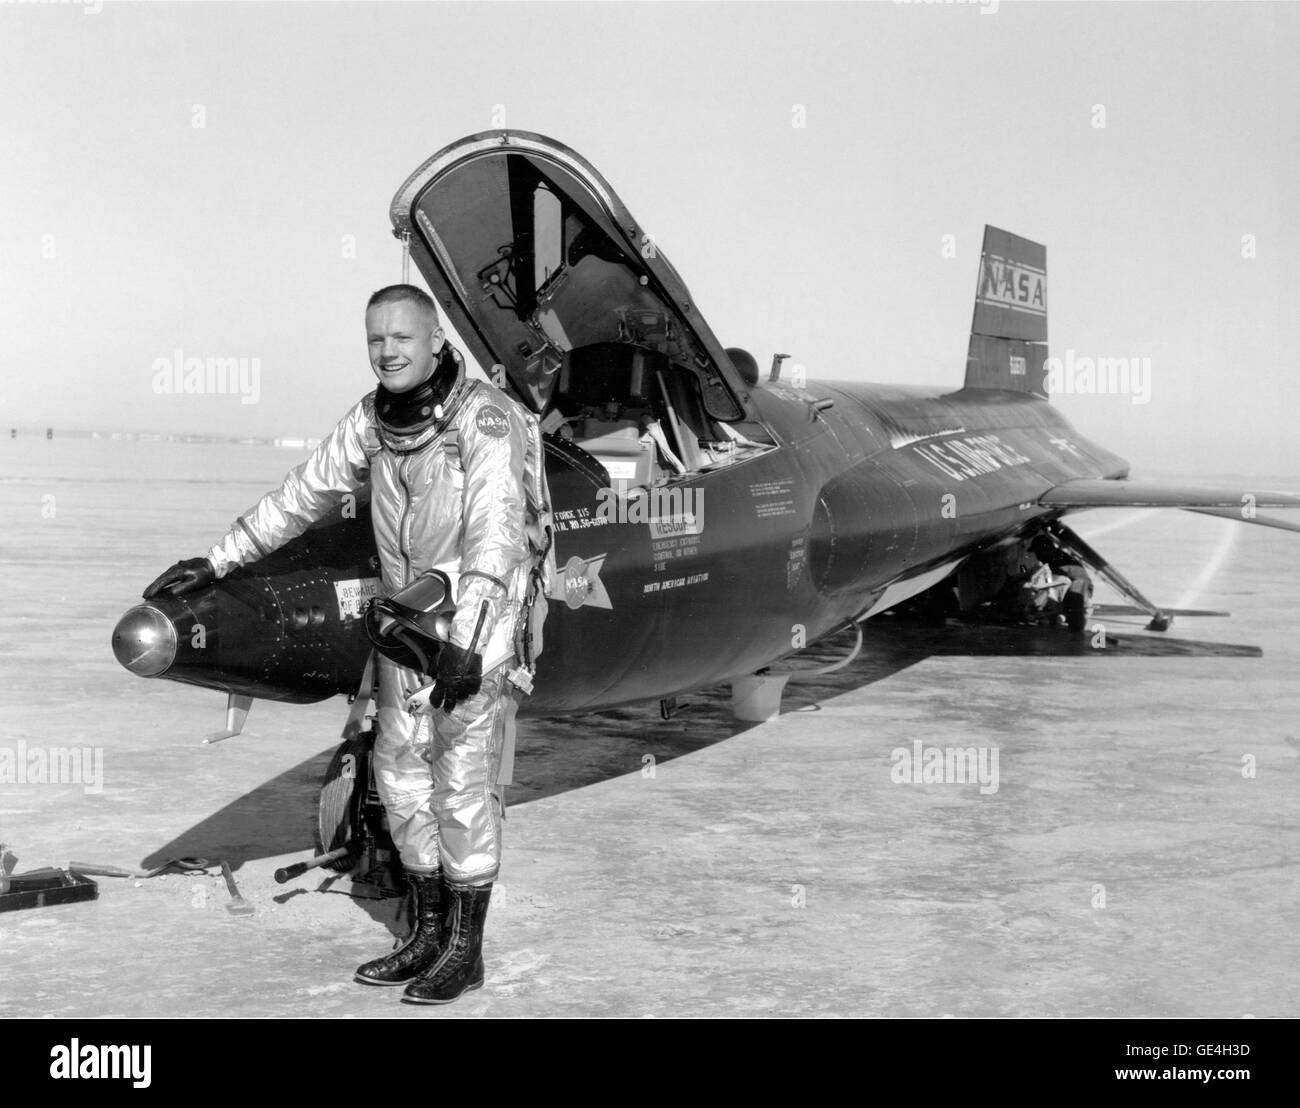 (30 novembre 1959) Dryden pilota di Neil Armstrong è visto qui accanto alla X-15 nave 1 (56-6670) dopo un volo di ricerca. L'X-15 era un razzo-powered aeromobile 50 piedi lungo con un'apertura alare di 22 piedi. È stato un missile a forma di veicolo con un insolito a cuneo di coda verticale, sottile tozze ali e unico carenature laterali che si estende lungo il lato della fusoliera. L'X-15 era volato per un periodo di quasi dieci anni, da giugno 1959 a ottobre 1968. Si imposta il mondo non ufficiale di velocità e altitudine record. Le informazioni acquisite dal successo di X-15 programma ha contribuito allo sviluppo o Foto Stock